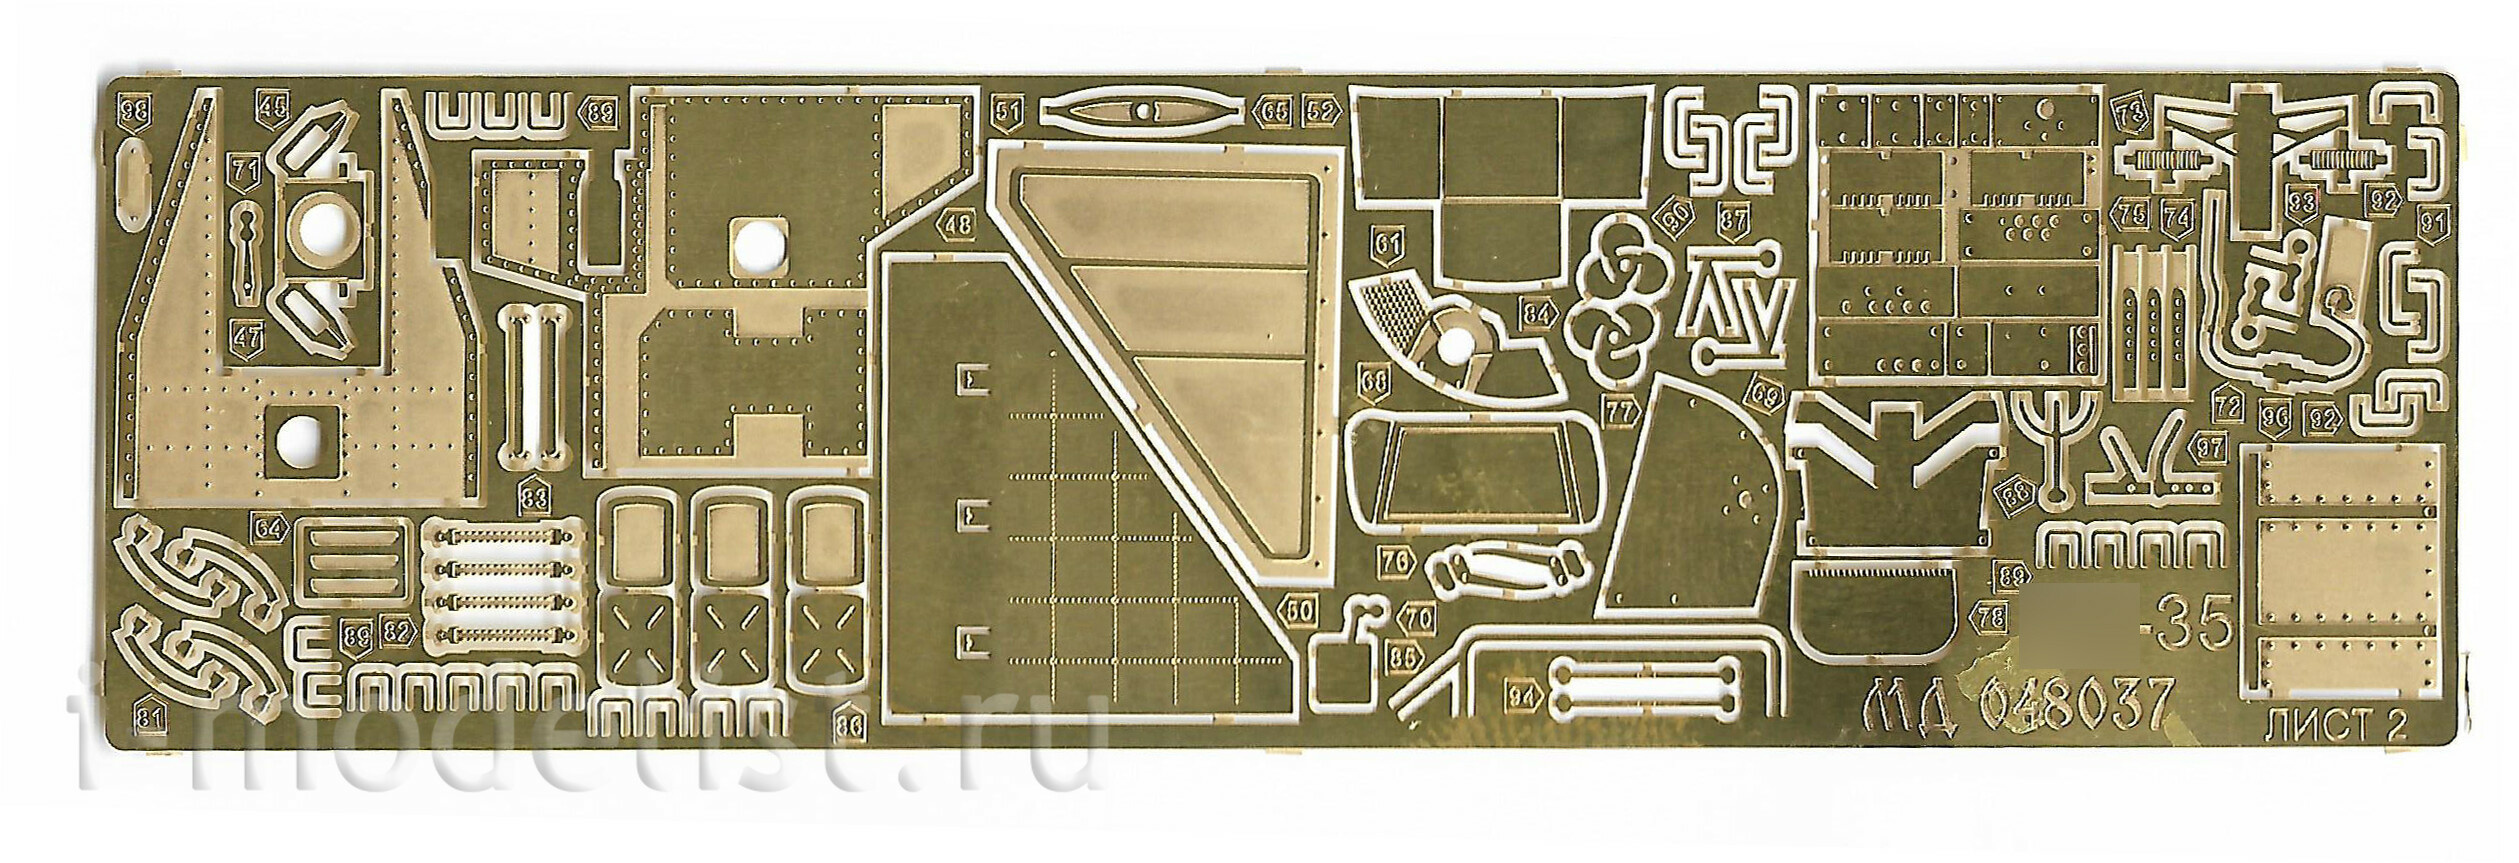 048037 Микродизайн 1/48 Набор фототравления на интерьер вертолёта Mu-35М